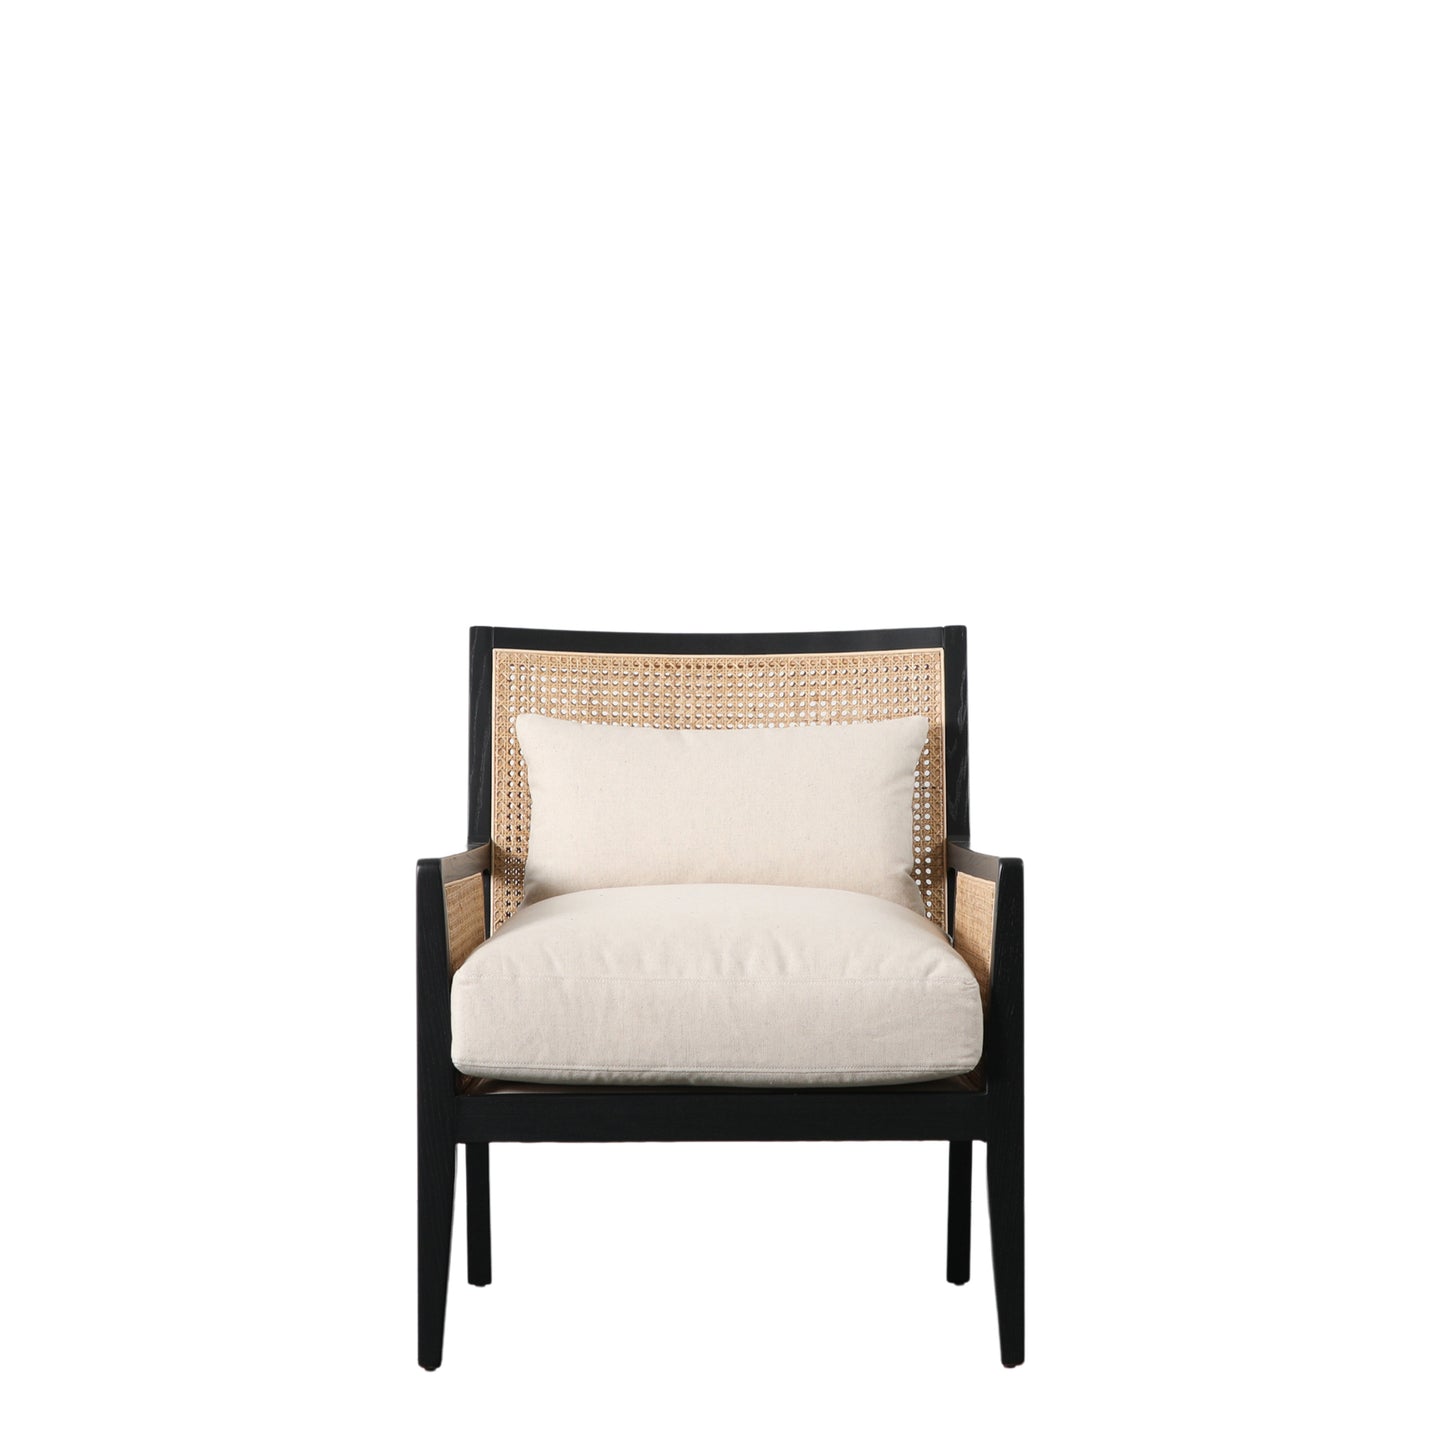 A cream Nagoya armchair with cushion for interior decor.